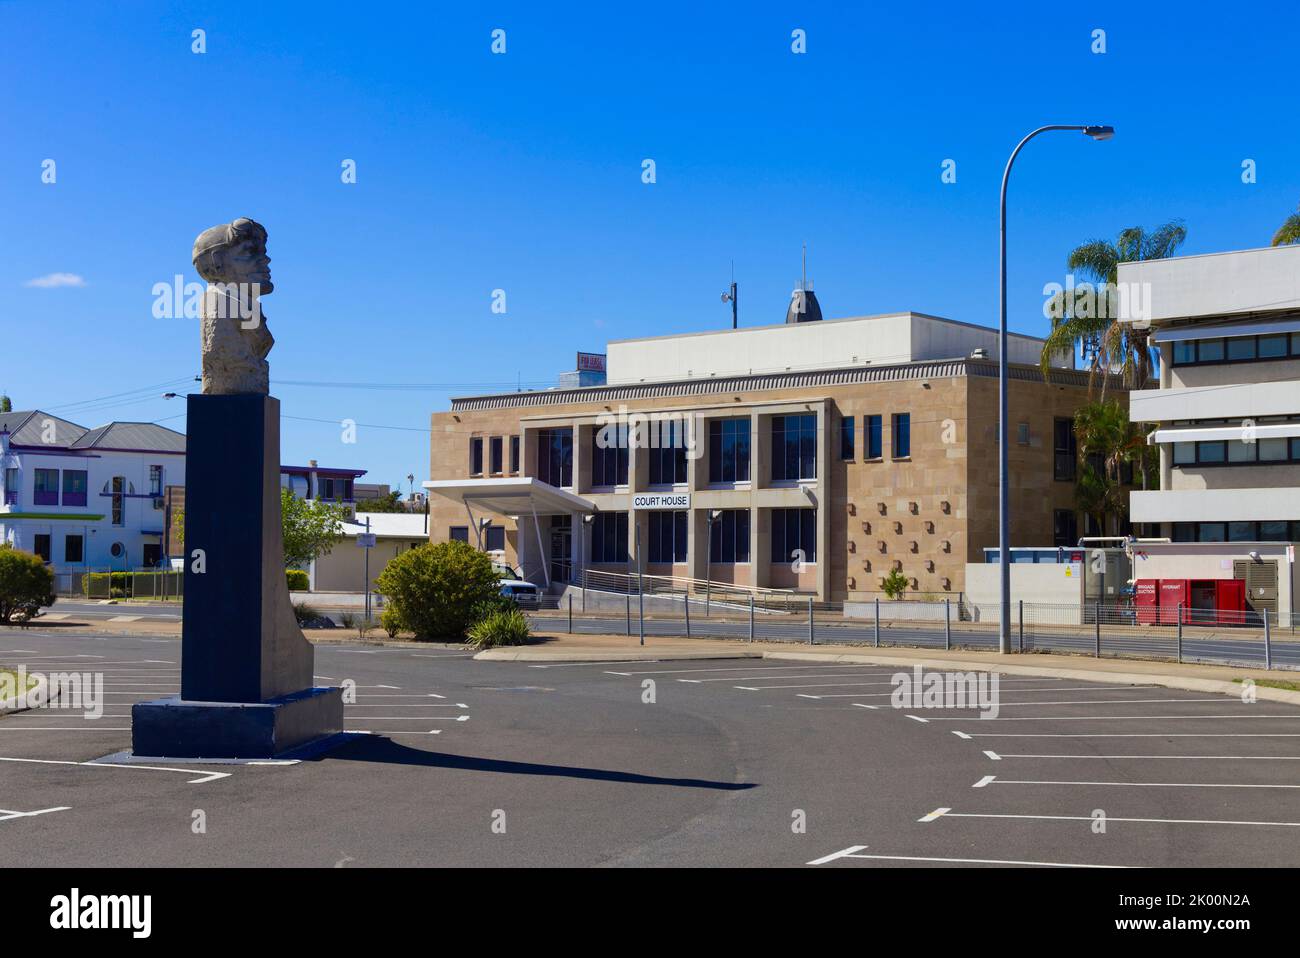 Bert Hinkler Memorial y Court House en Quay Street Bundaberg Queensland, Australia. Foto de stock